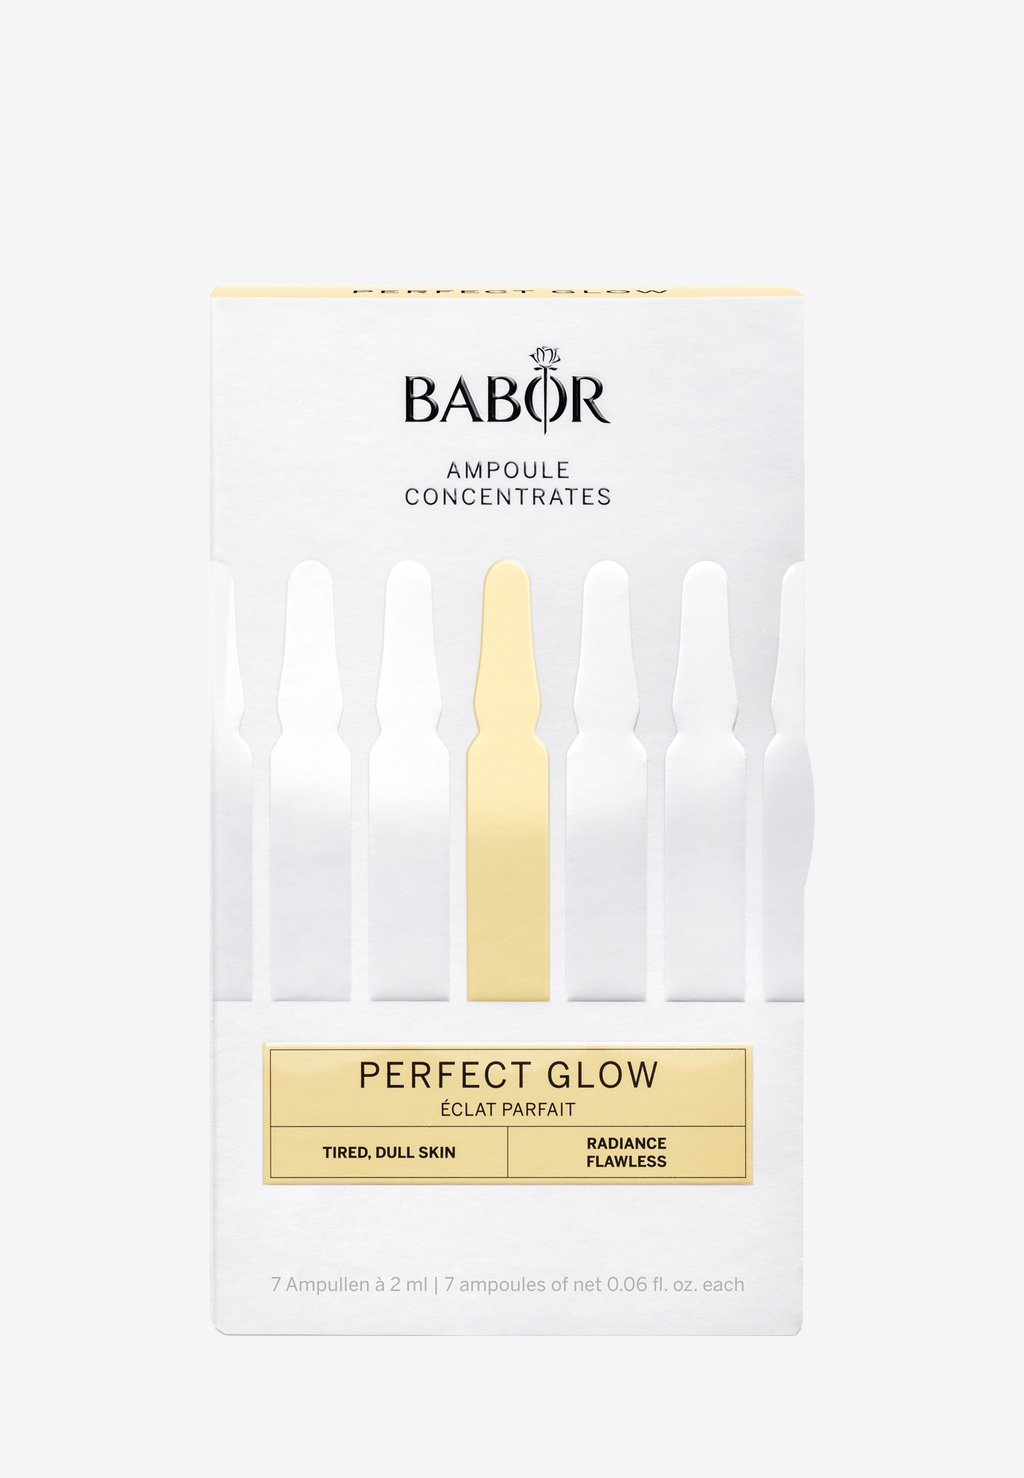 Набор для ухода за кожей Perfect Glow BABOR набор для ухода за кожей ionic shot lixirskin